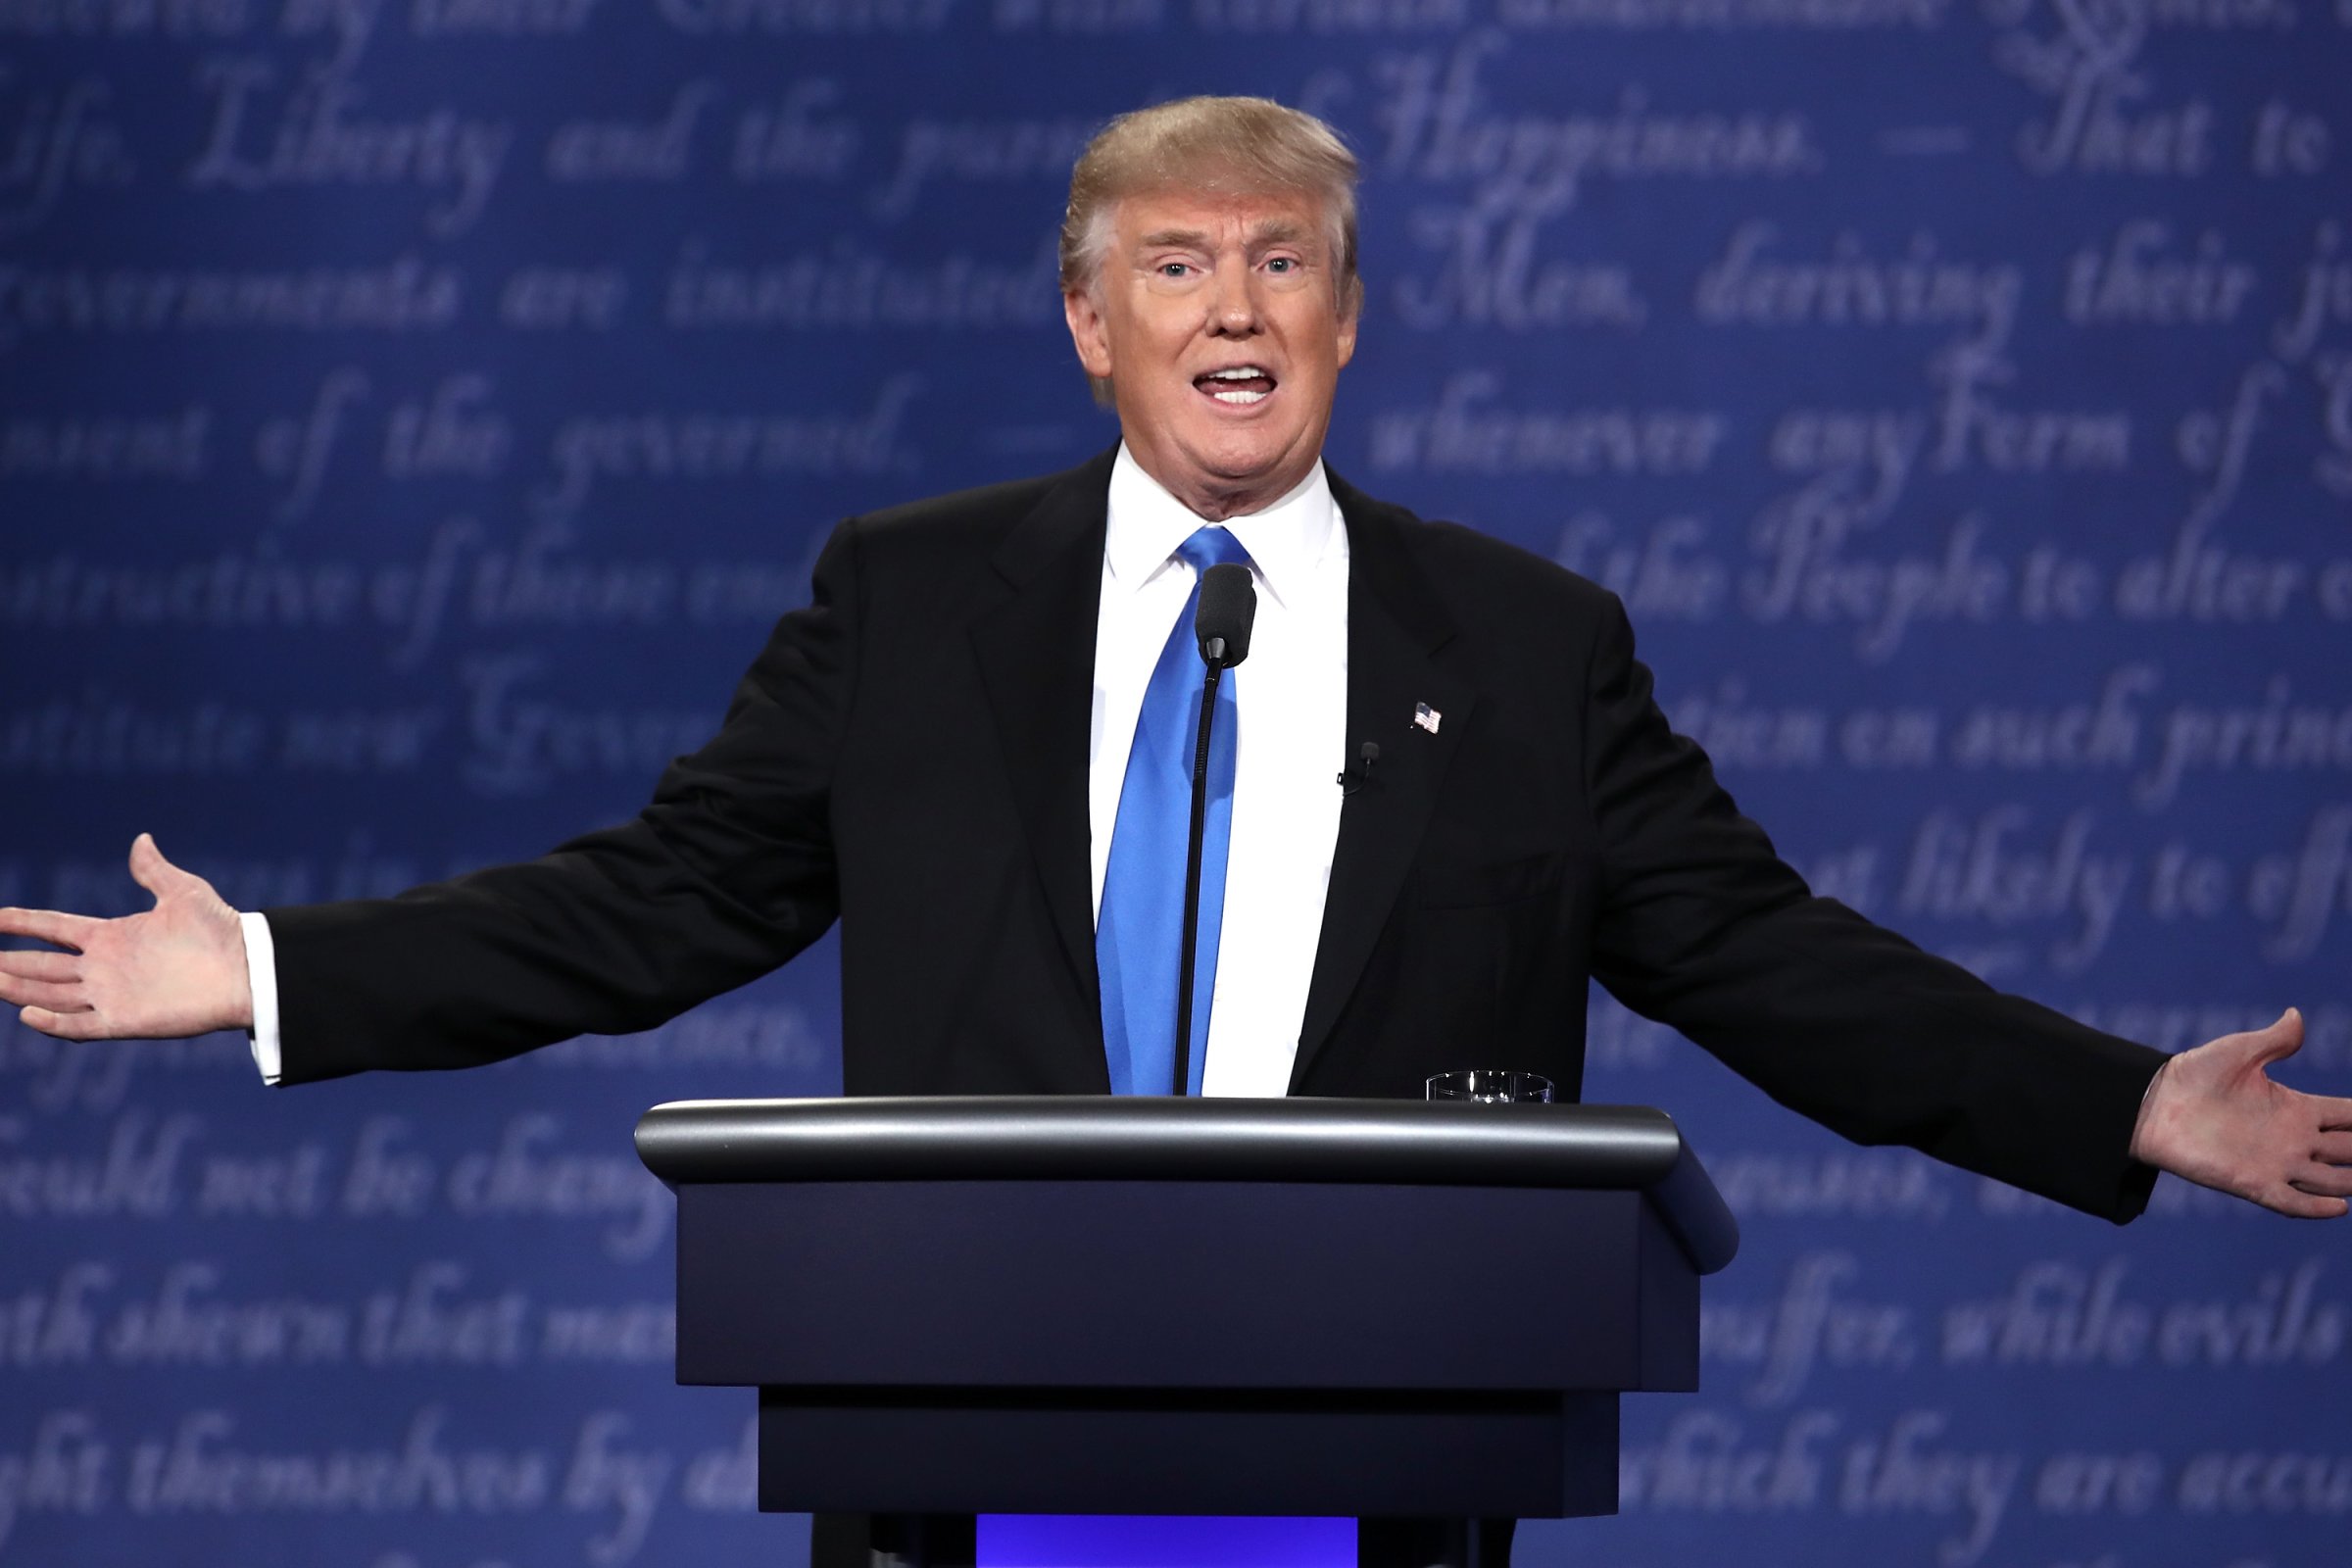 Republican presidential nominee Donald Trump speaks during the Presidential Debate at Hofstra University in Hempstead, N.Y., on Sept. 26, 2016.